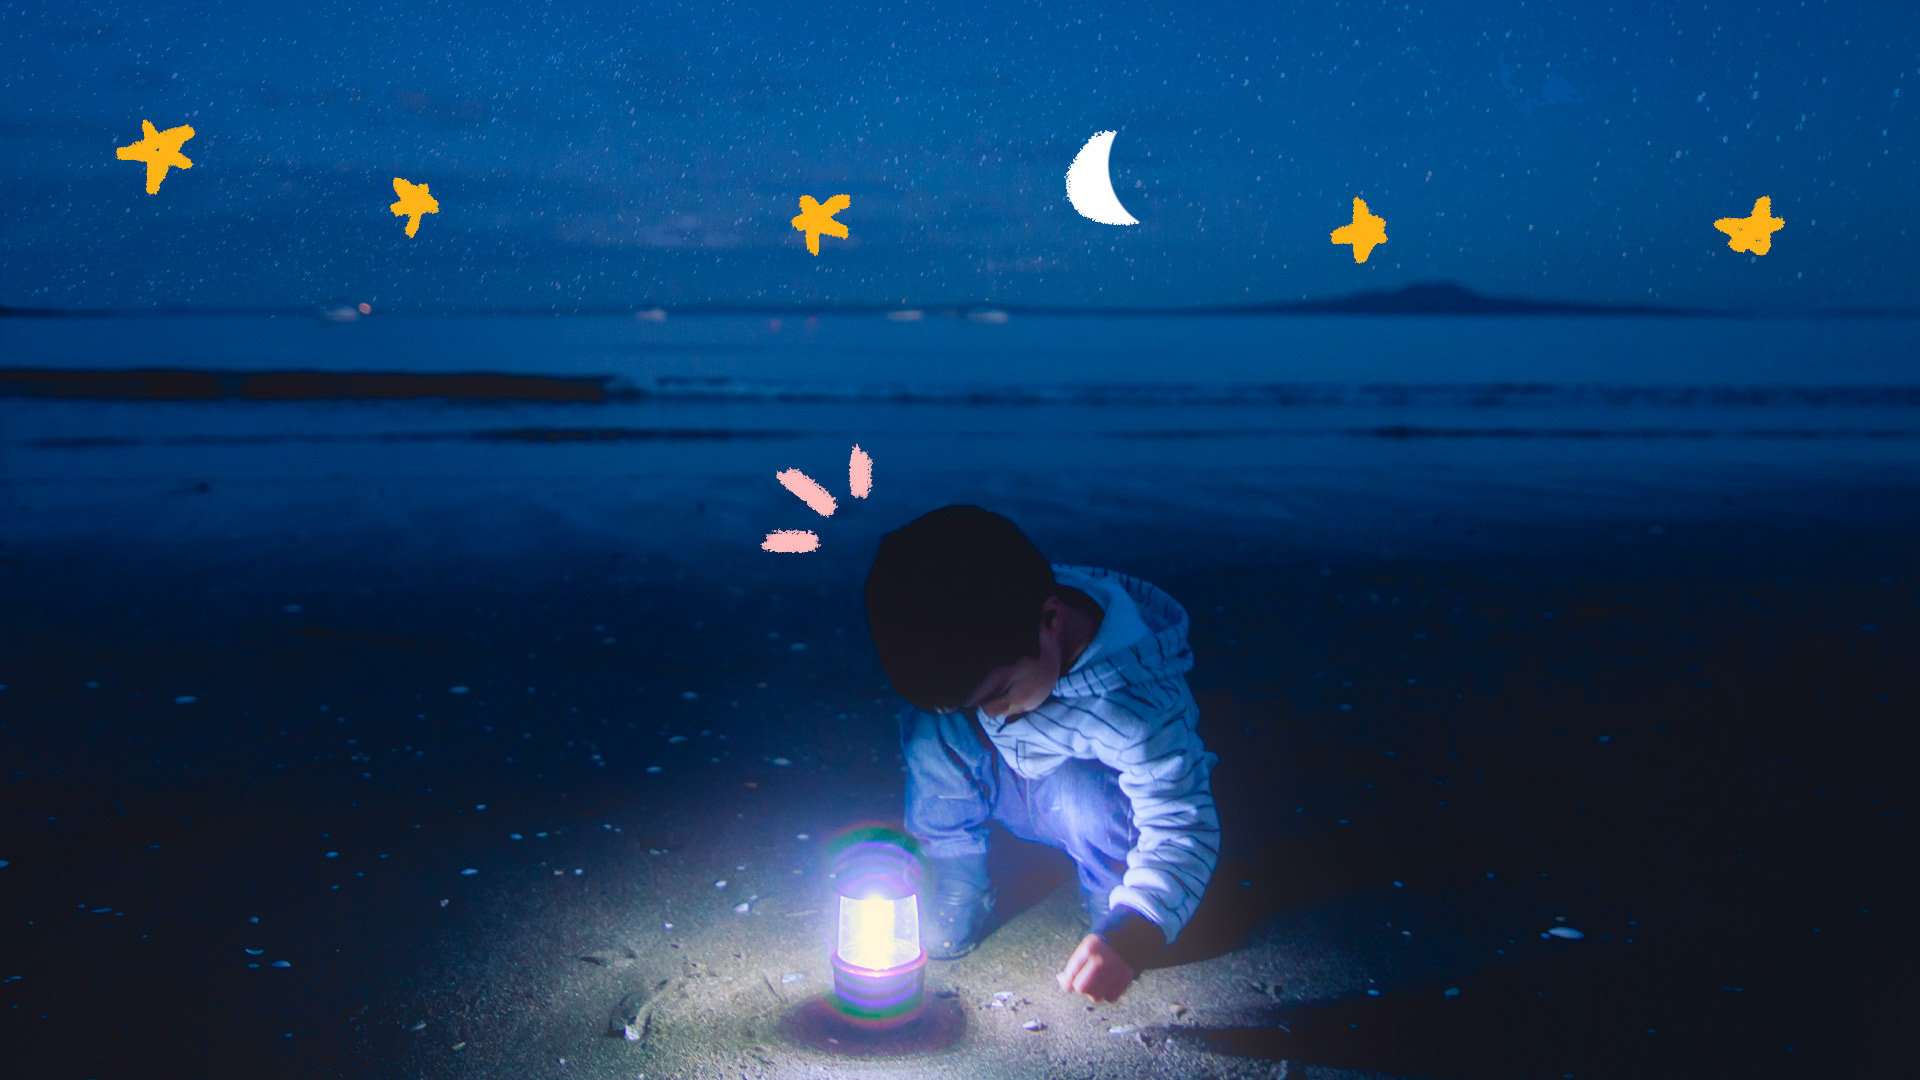 Foto de um menino na praia à noite. Ele brinca com um abajur e ao redor há estrelas e luas desenhadas